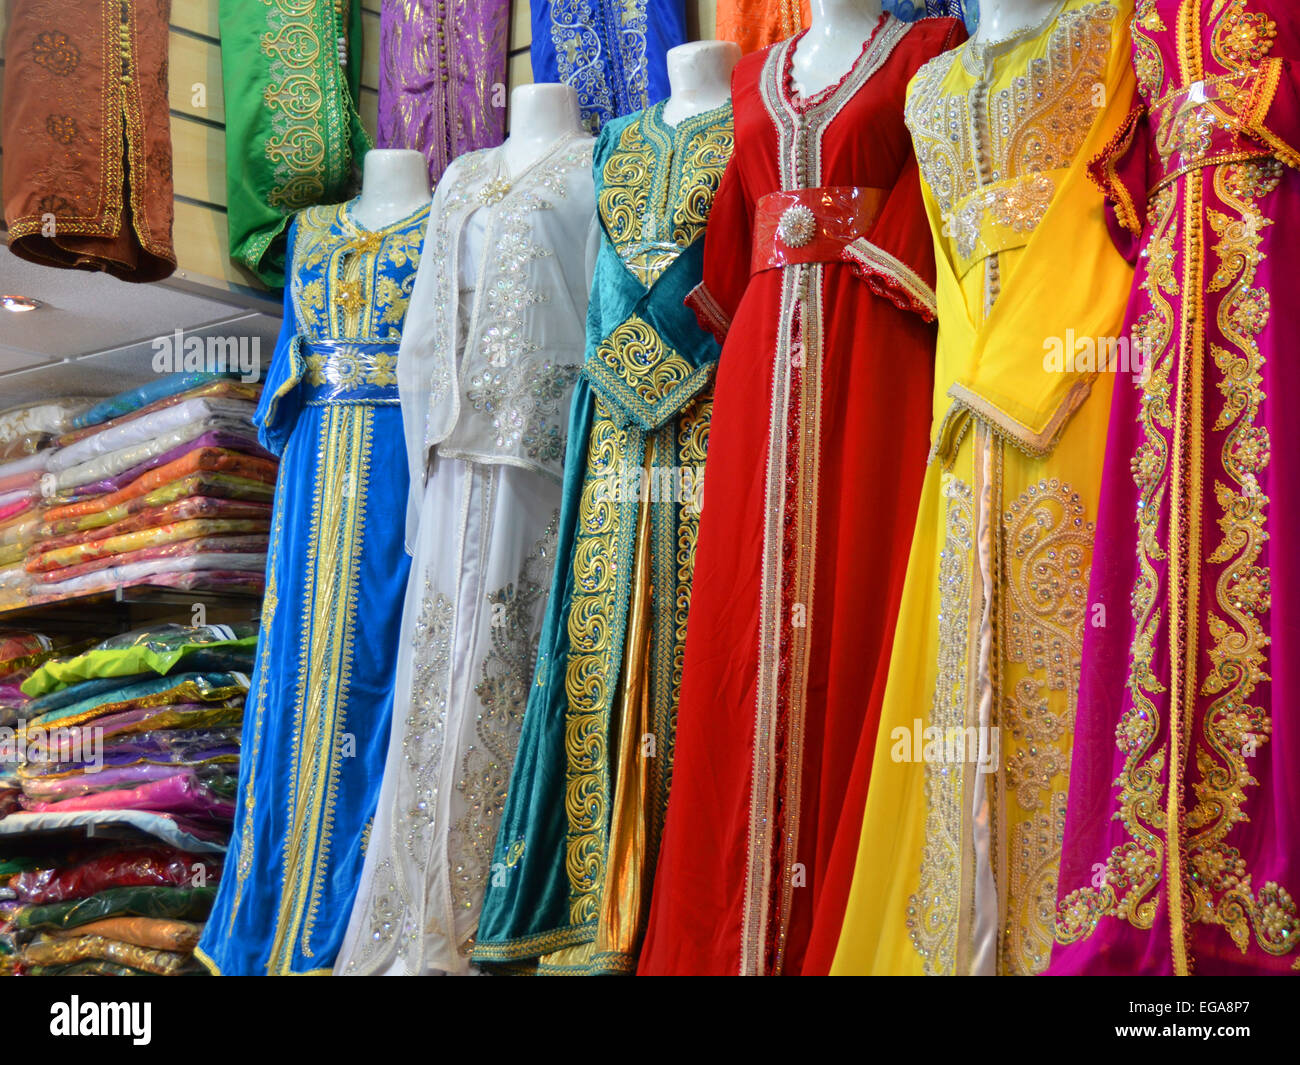 Bunte lange Kleider zu verkaufen, Marrakesch, Marokko Stockfotografie -  Alamy